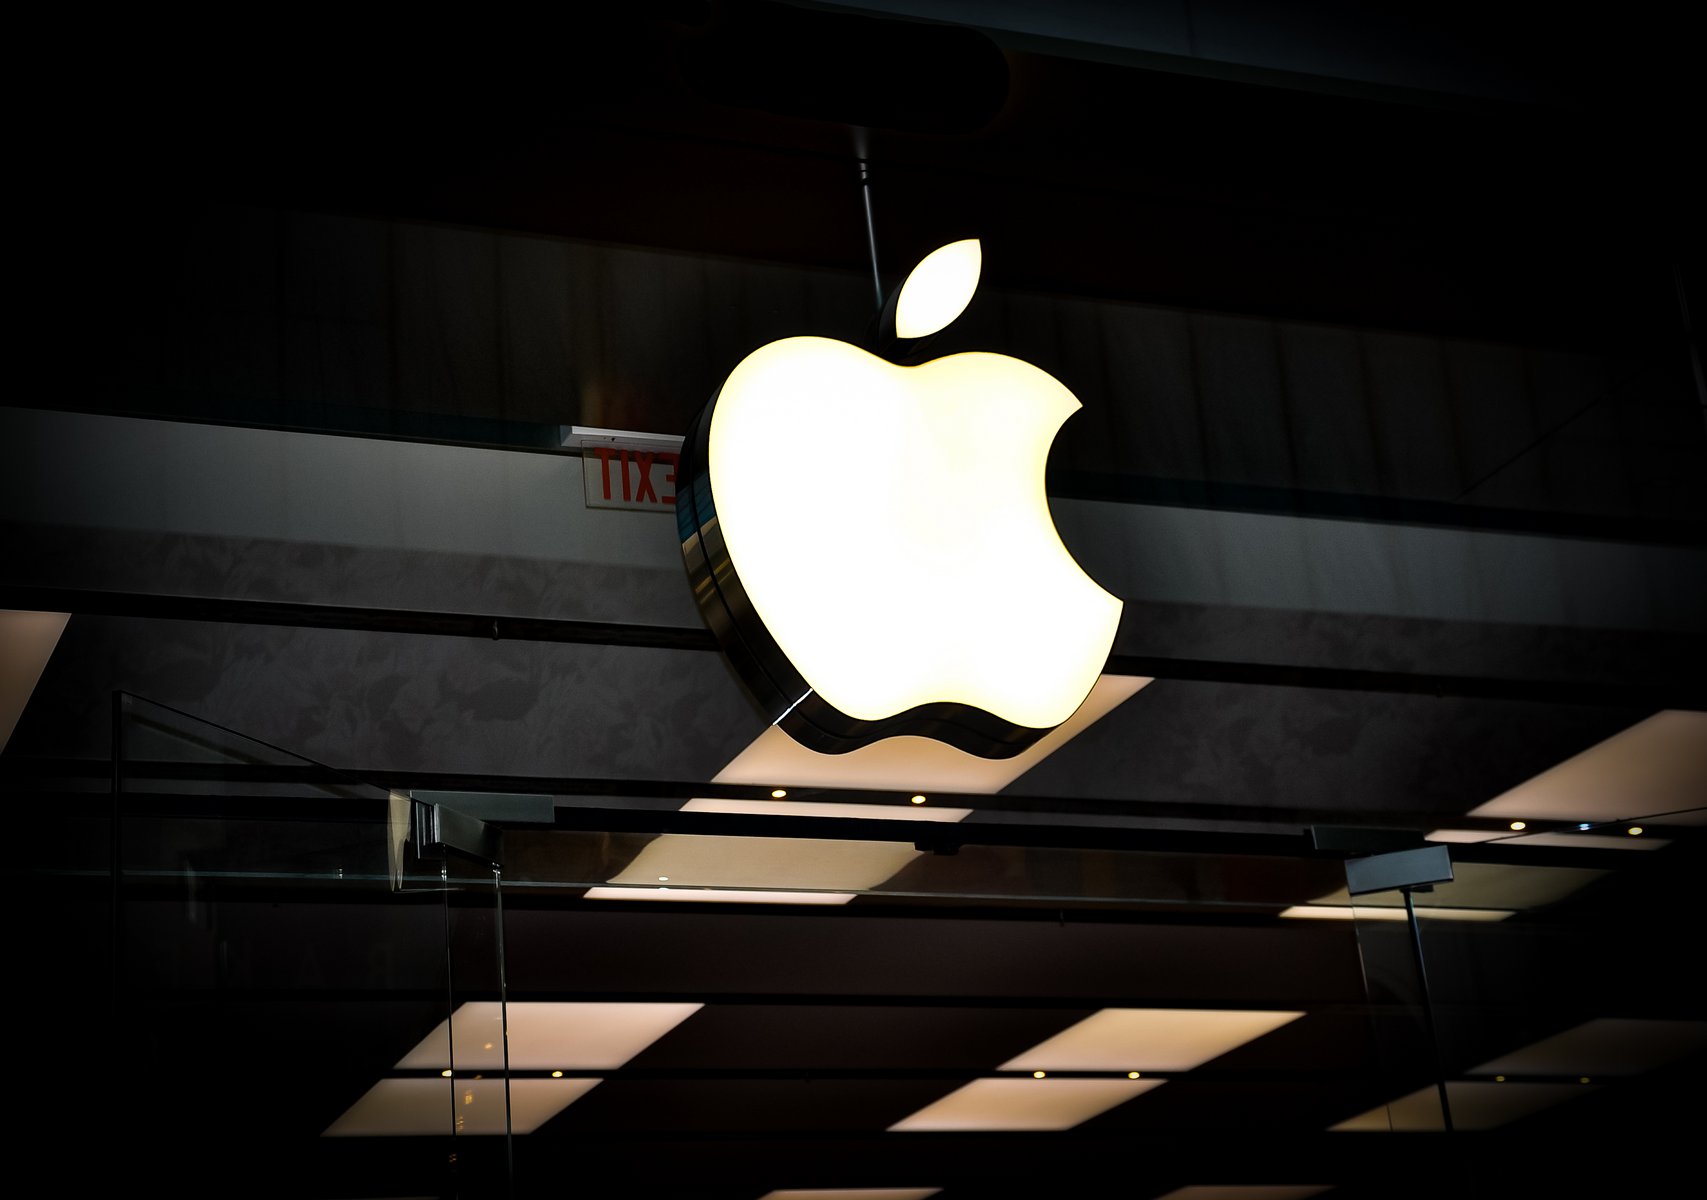 Ιστορία τρισεκατομμυρίων από την Apple: Η μοναδική εταιρεία που έπιασε χρηματιστηριακή αξία-ρεκόρ